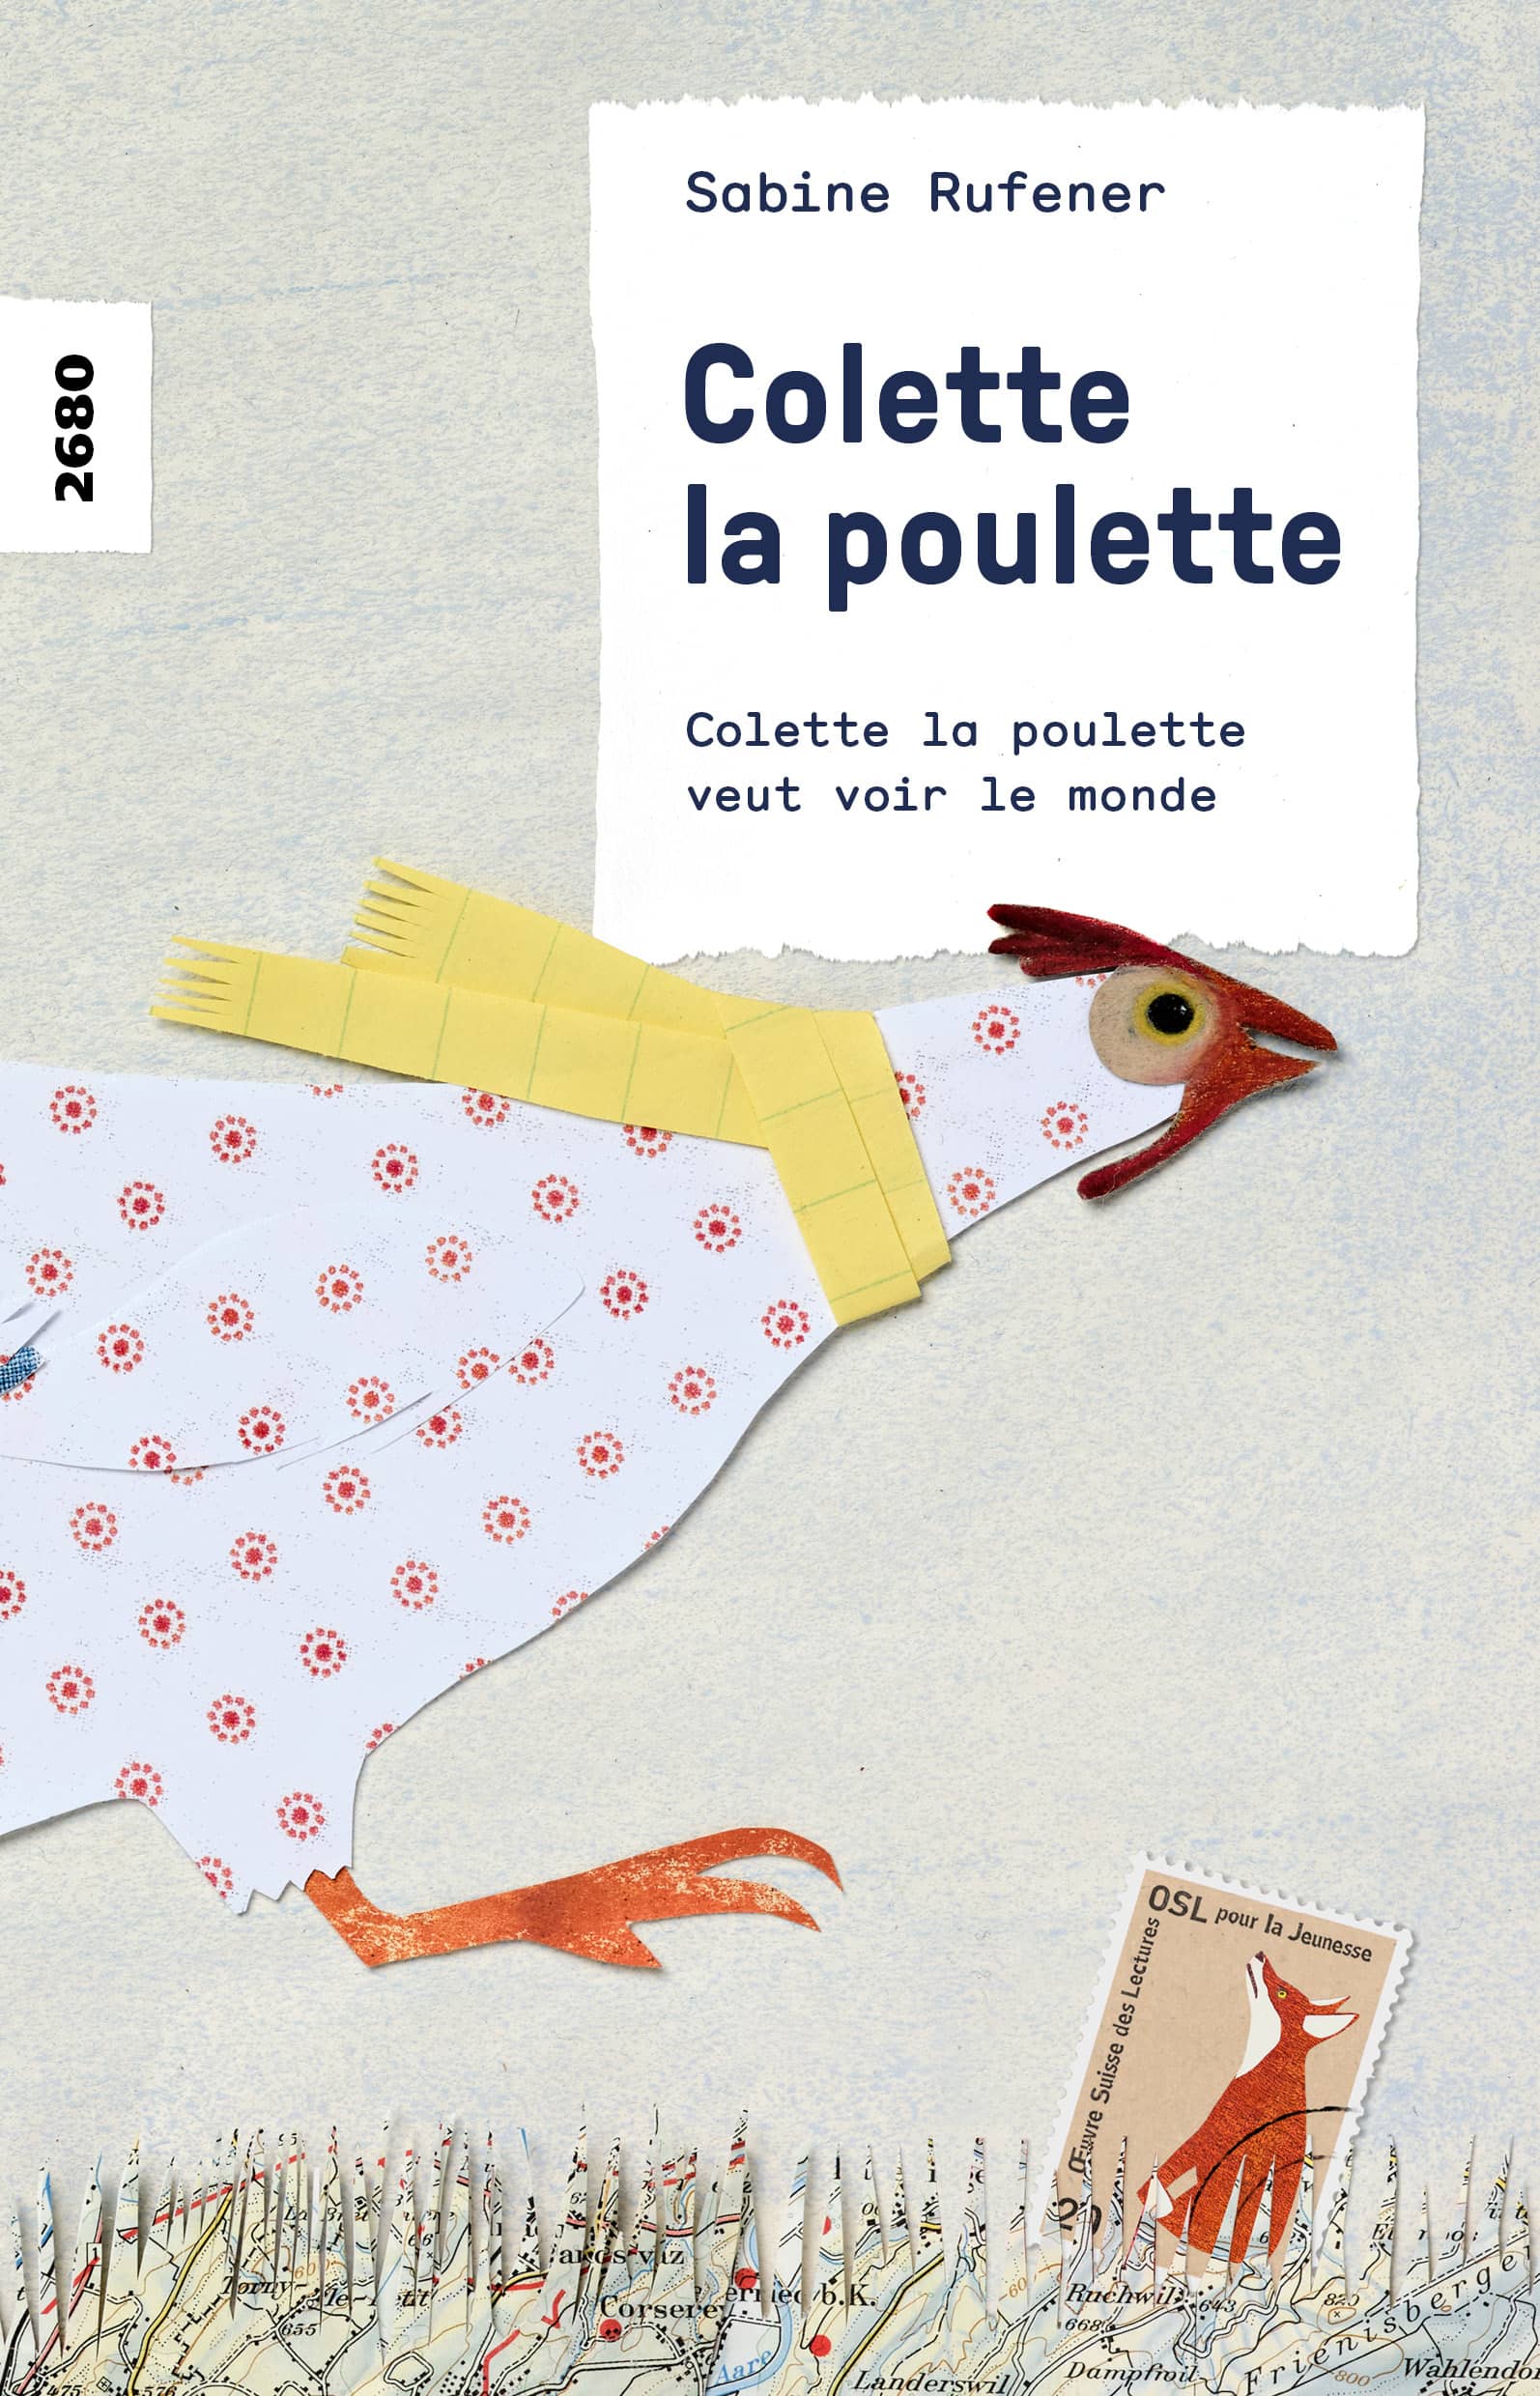 Colette la poulette veut voir le monde, un livre pour enfants de Sabine Rufener, éditions OSL, Identité, bricolage, pâques